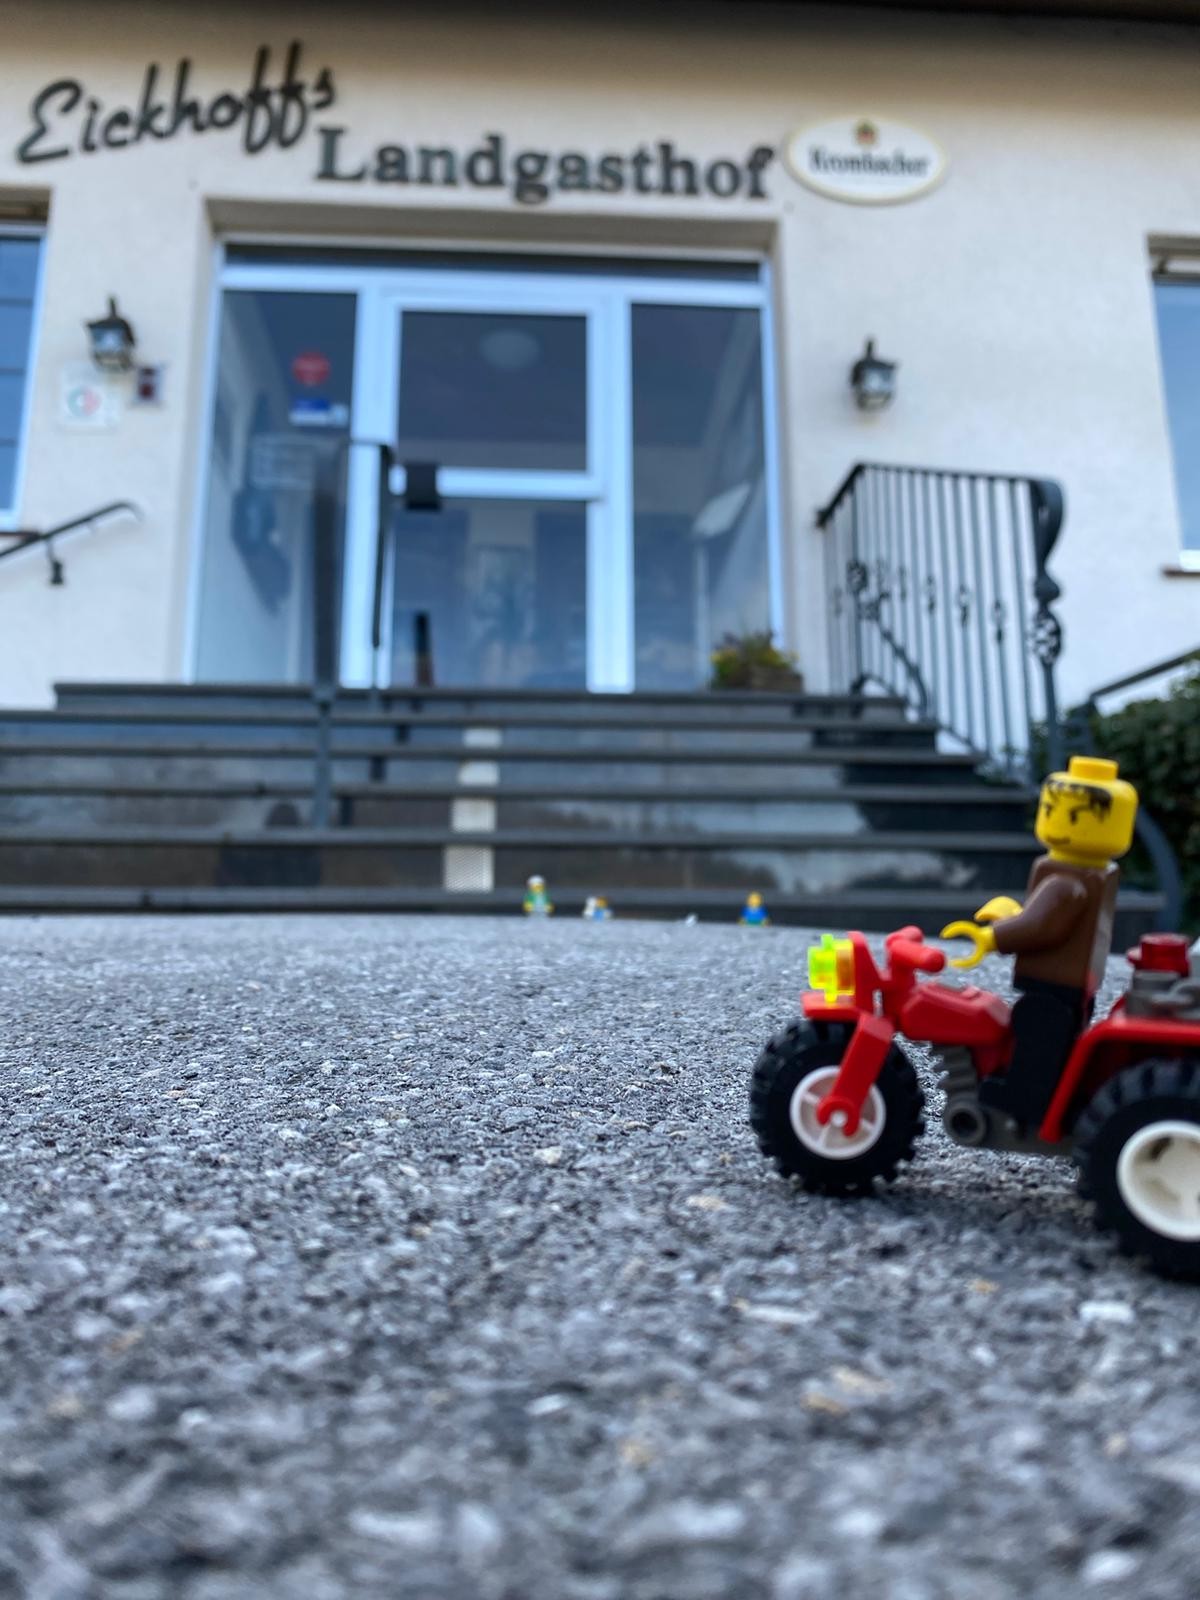 Lego statt Gäste: Auch auf Eickhoffs Landgasthof sind die gelben Figuren angereist. von privat